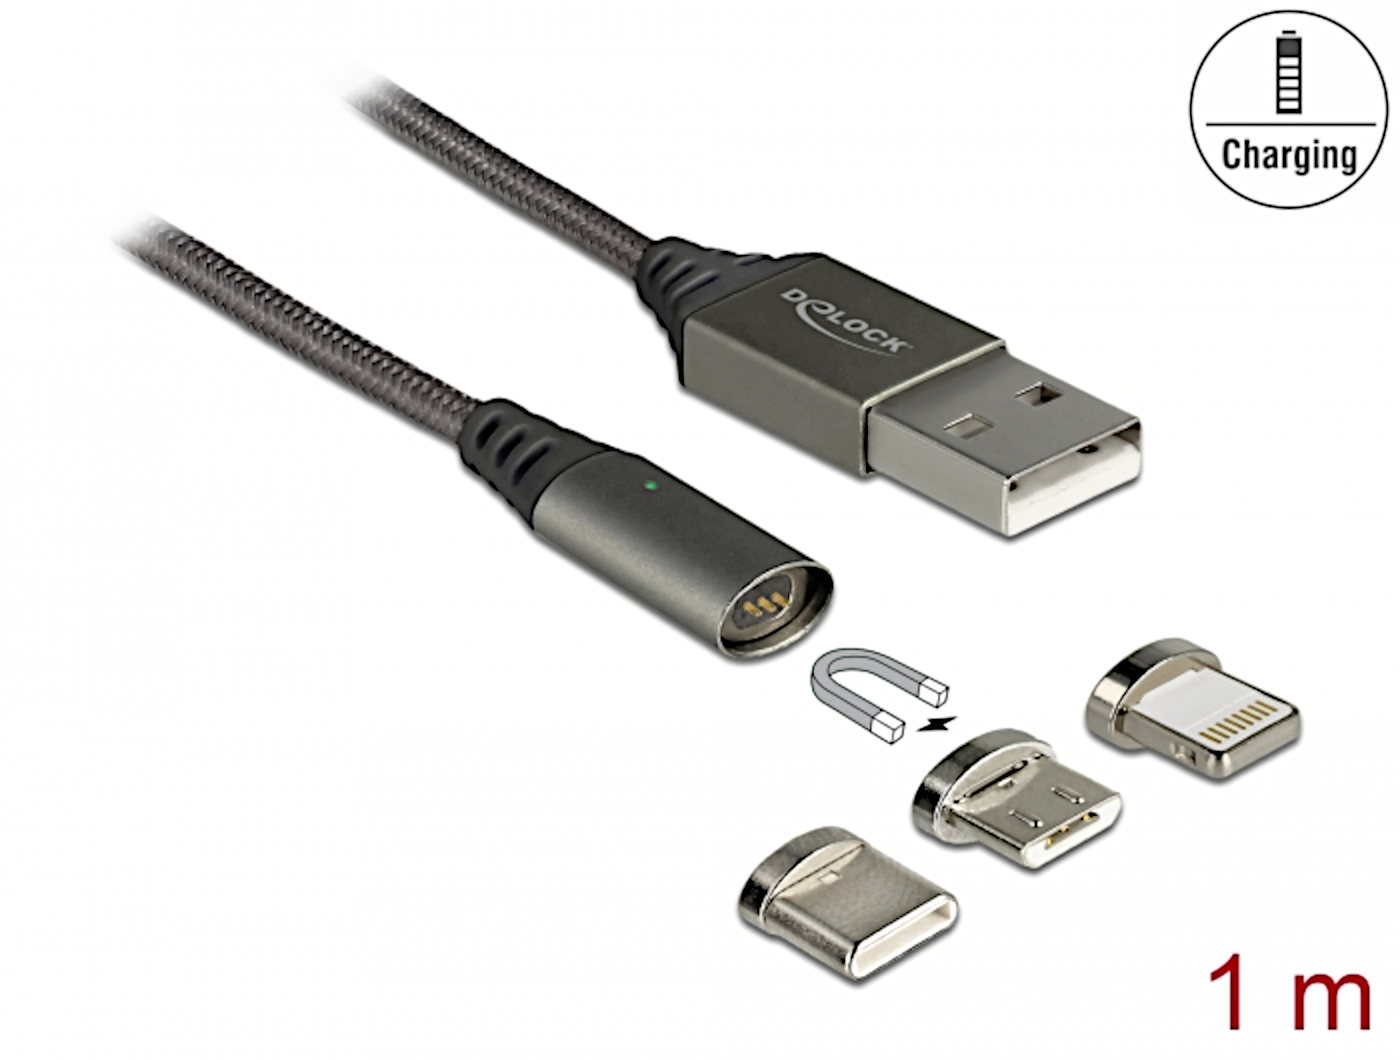 Magnetisk kabel: / USB / USB C | Elektronik Lavpris Aps